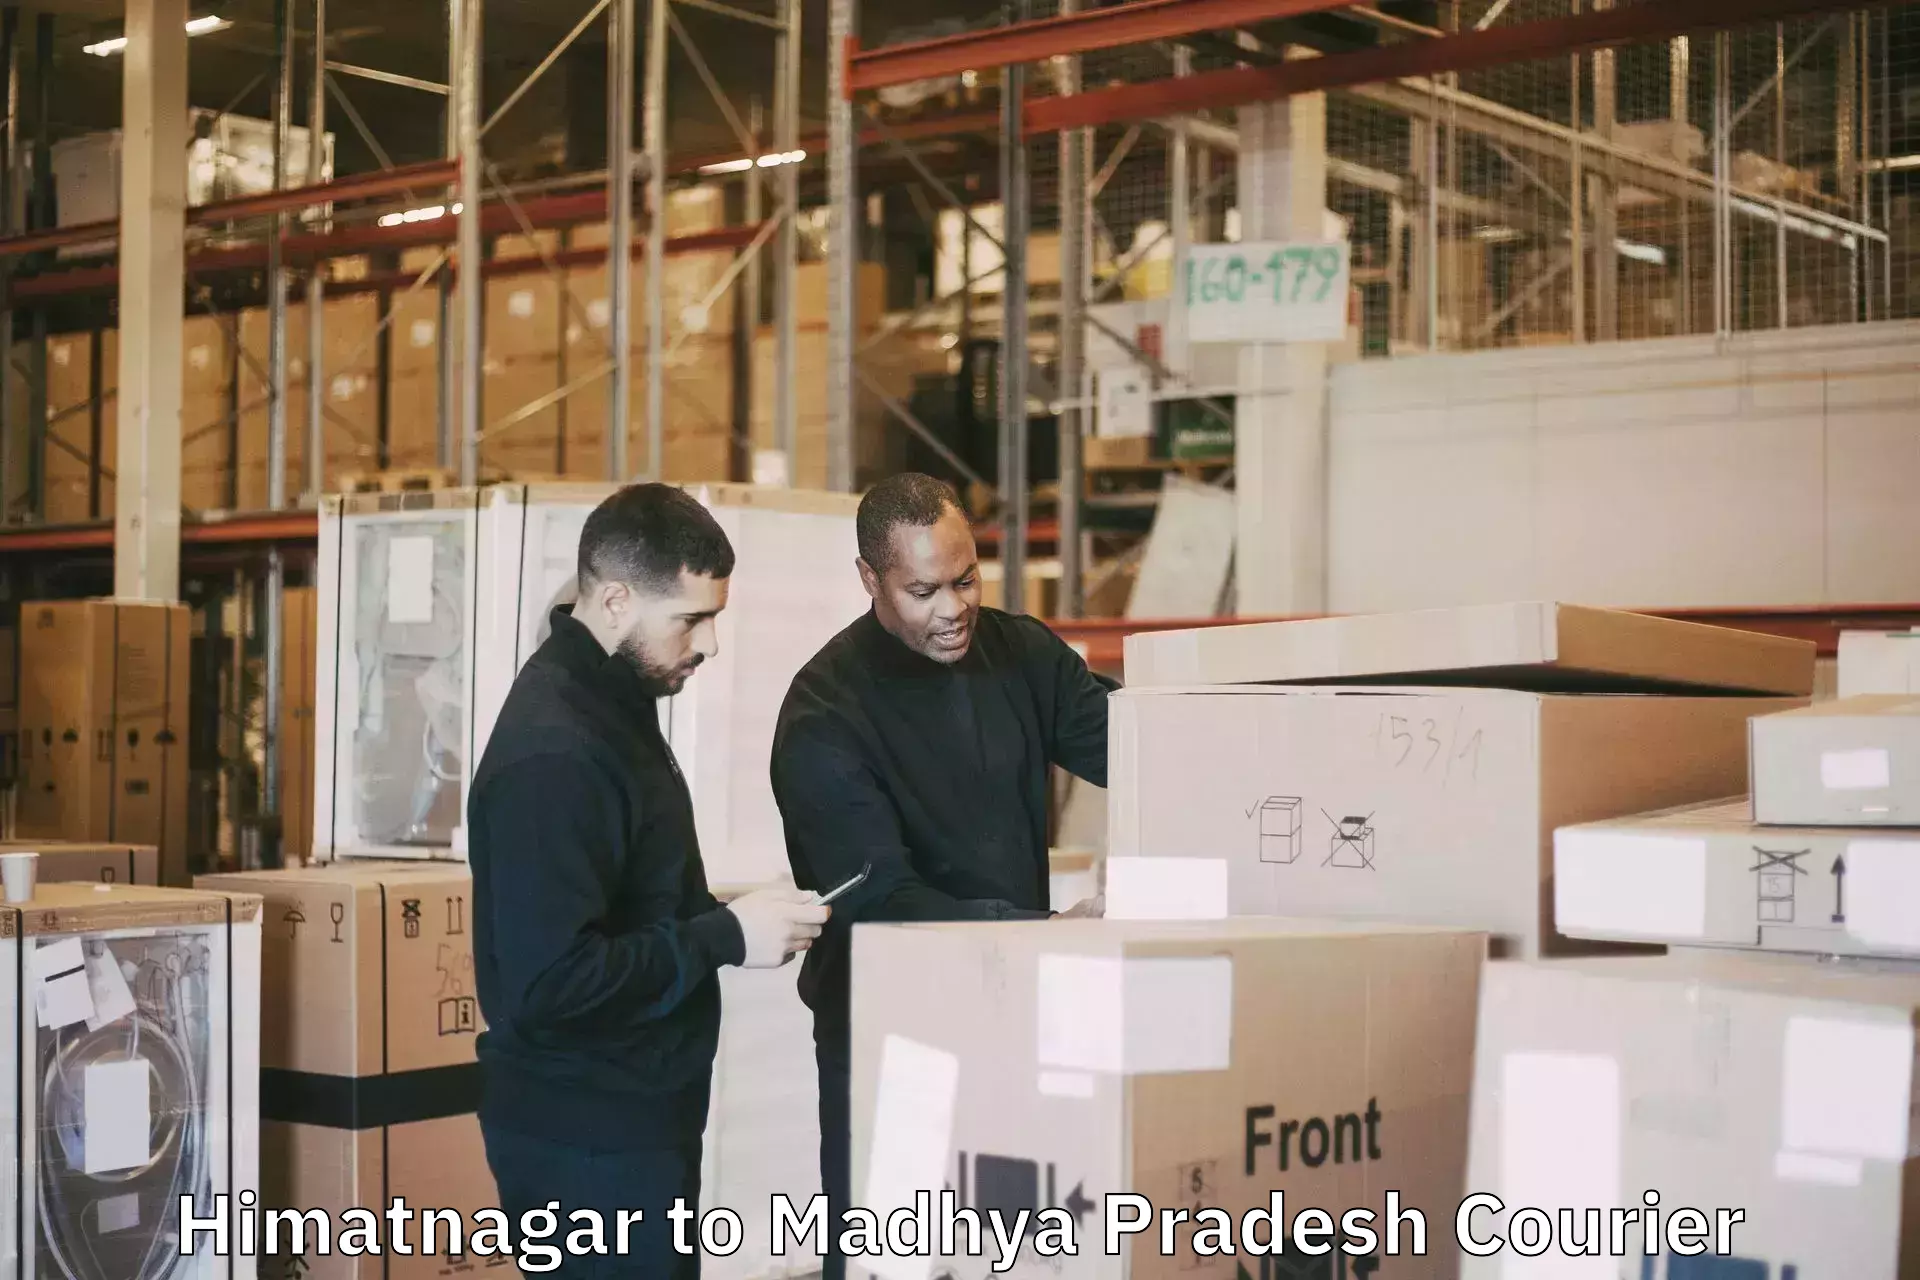 Baggage shipping schedule Himatnagar to Datia